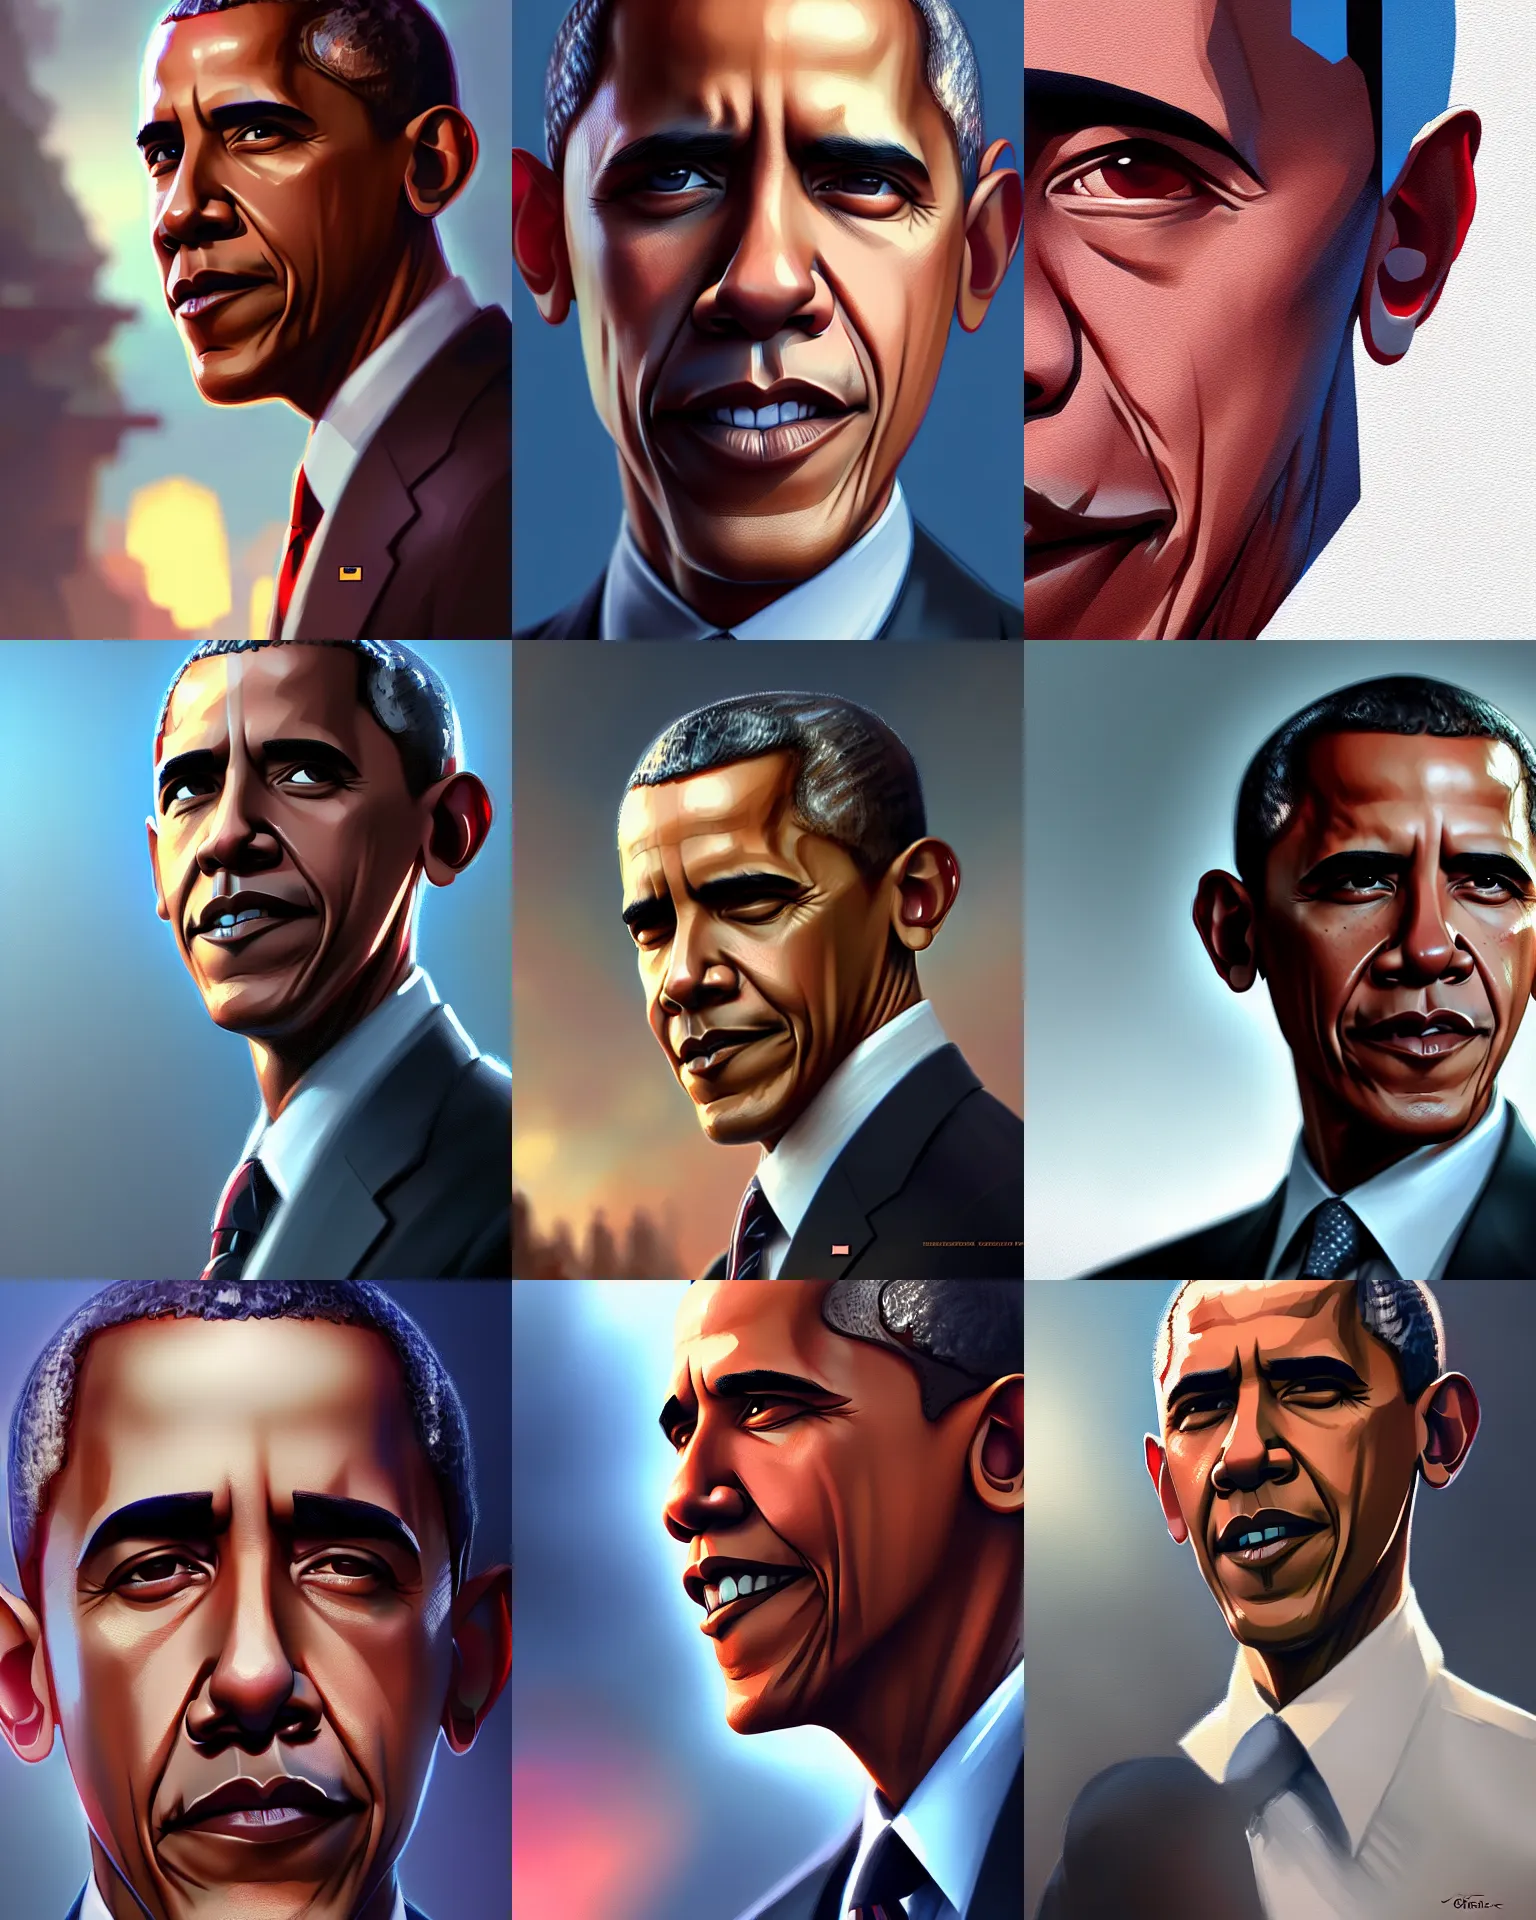 Prompt: Barack Obama, medium shot close up, details, sharp focus, illustration, by Jordan Grimmer and greg rutkowski, Trending artstation, pixiv, digital Art